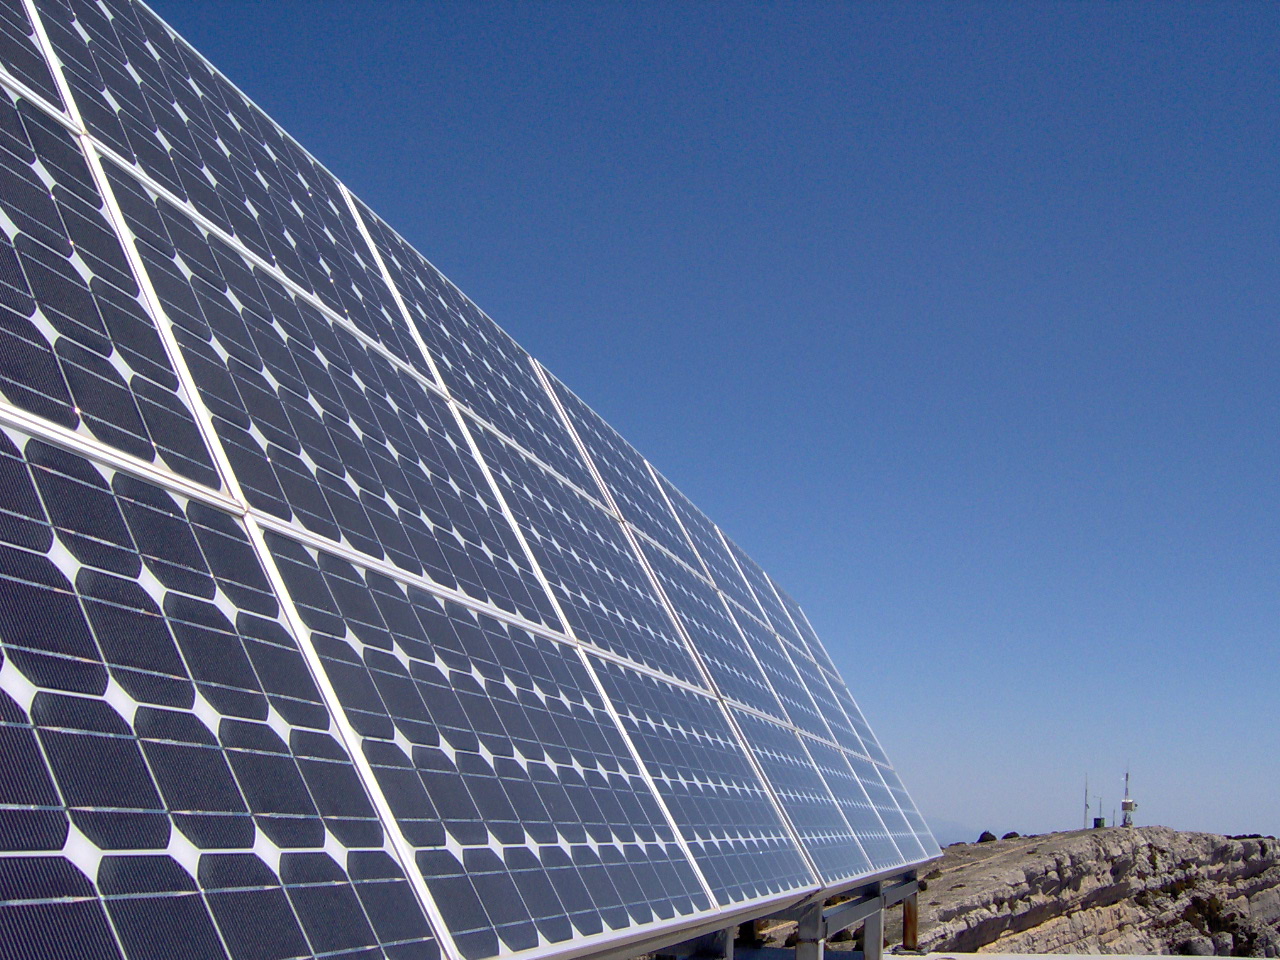 Los paneles fotovoltaicos convierten directamente la energía luminosa en energía eléctrica (wikimedia.org)